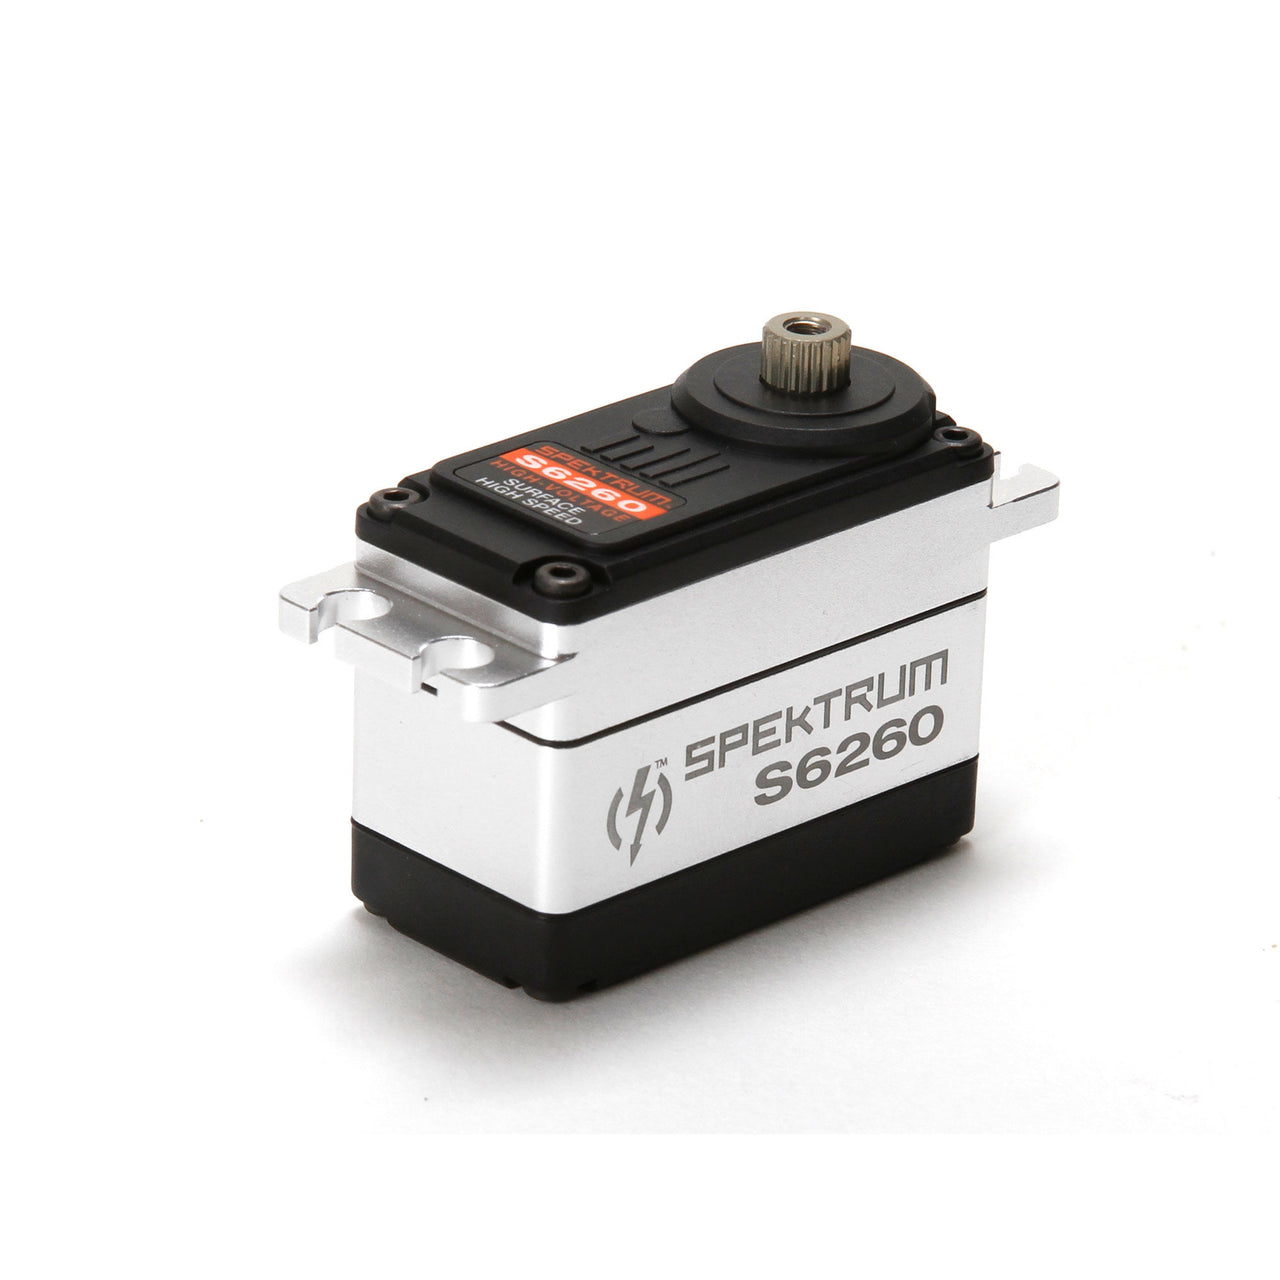 SPMSS6260 S6260 Servo de superficie de engranaje de metal de alta velocidad digital estándar HV 